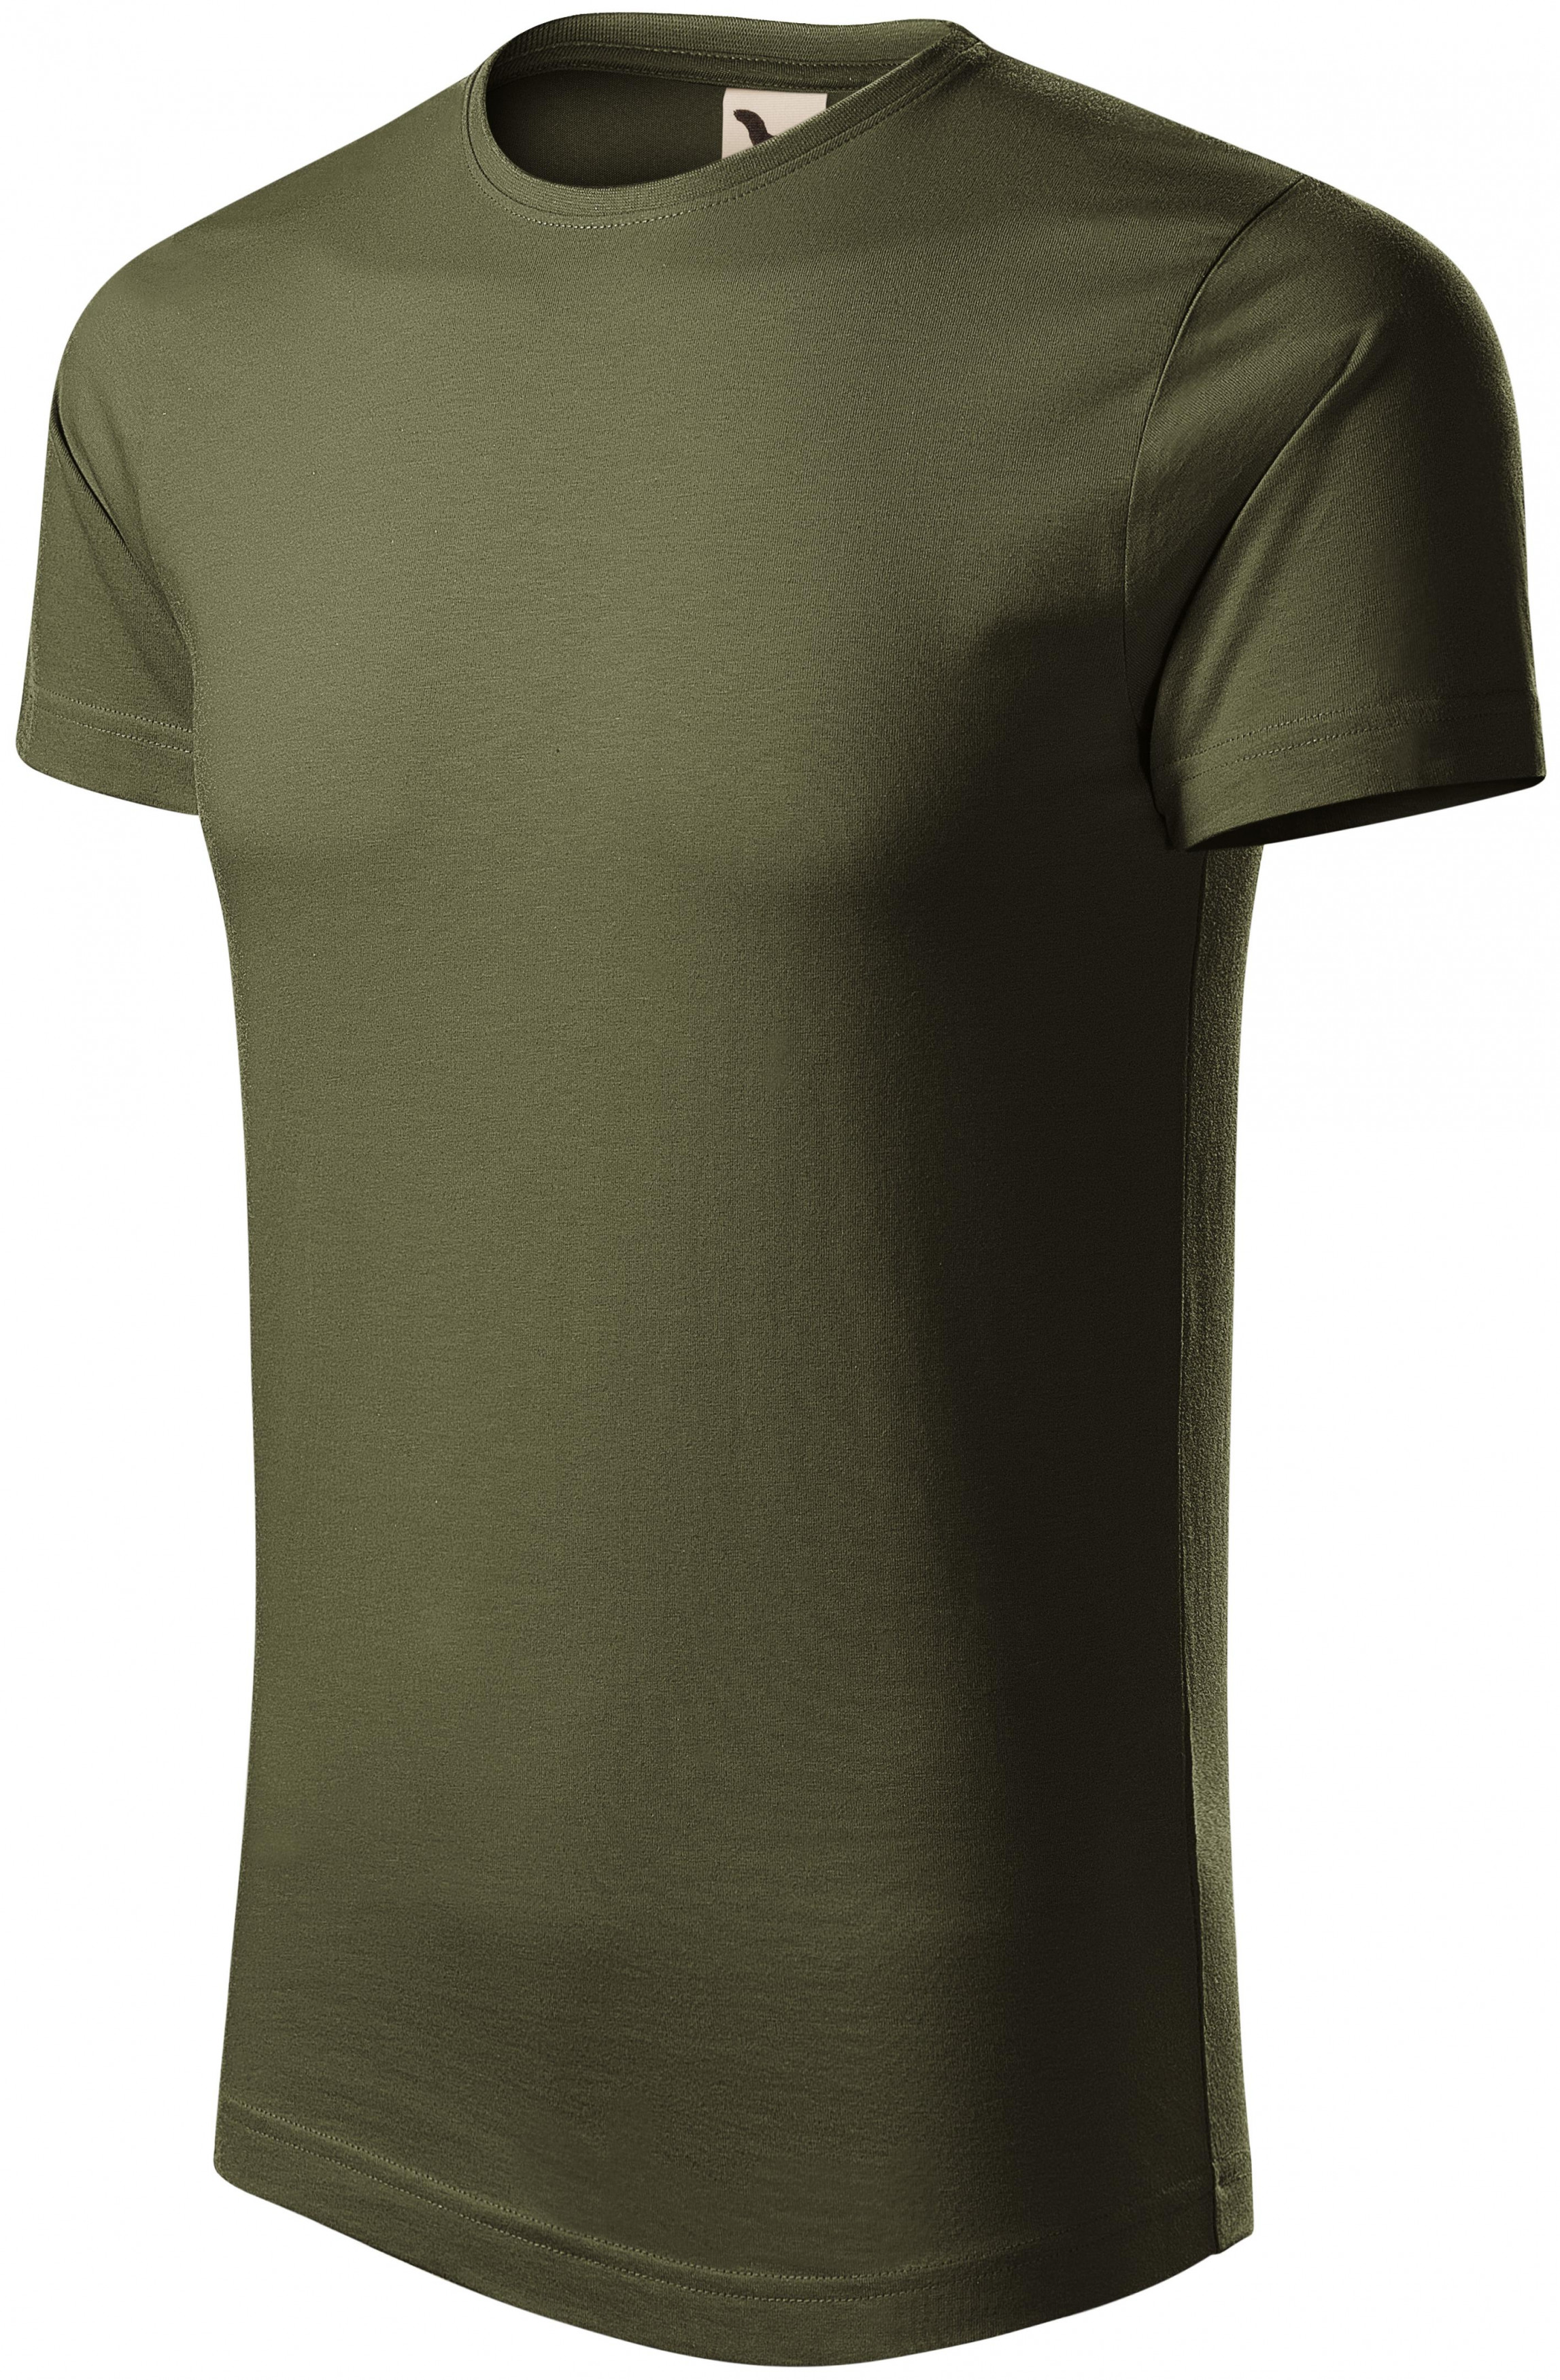 Pánske tričko, organická bavlna, military, XL